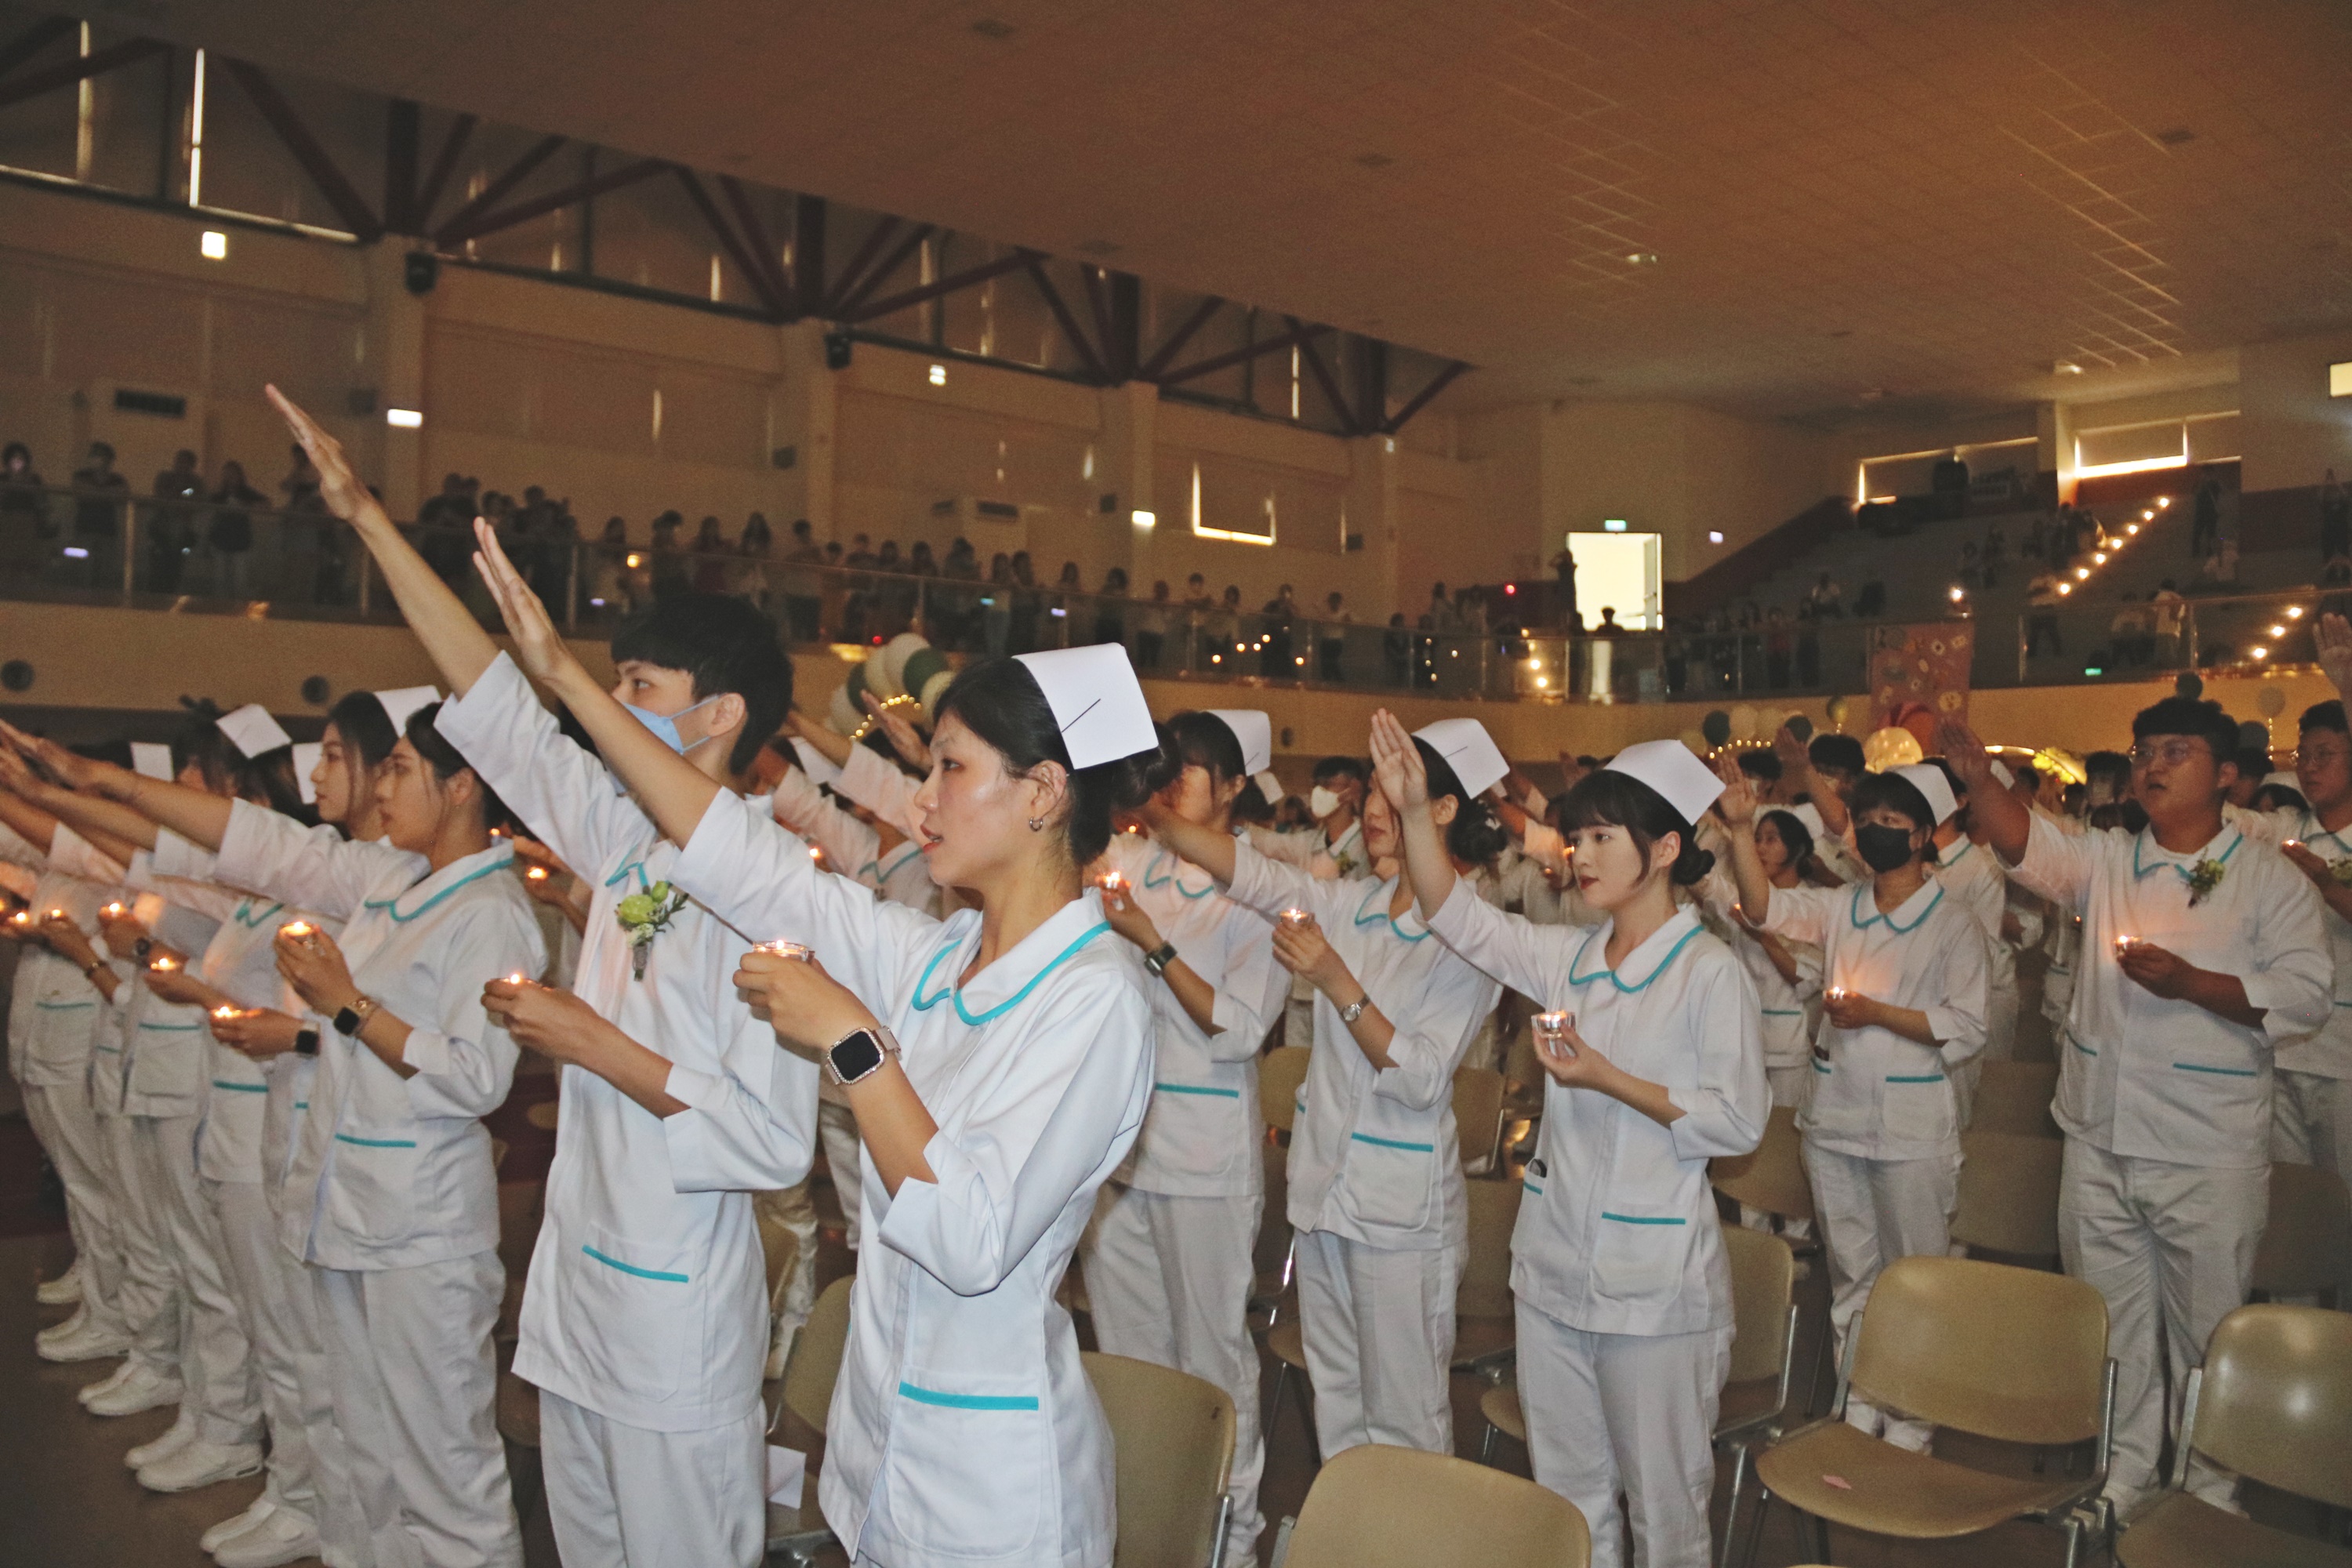 弘光科大举办加冠典礼，249位护生宣誓投入护理志业。记者游振升／摄影